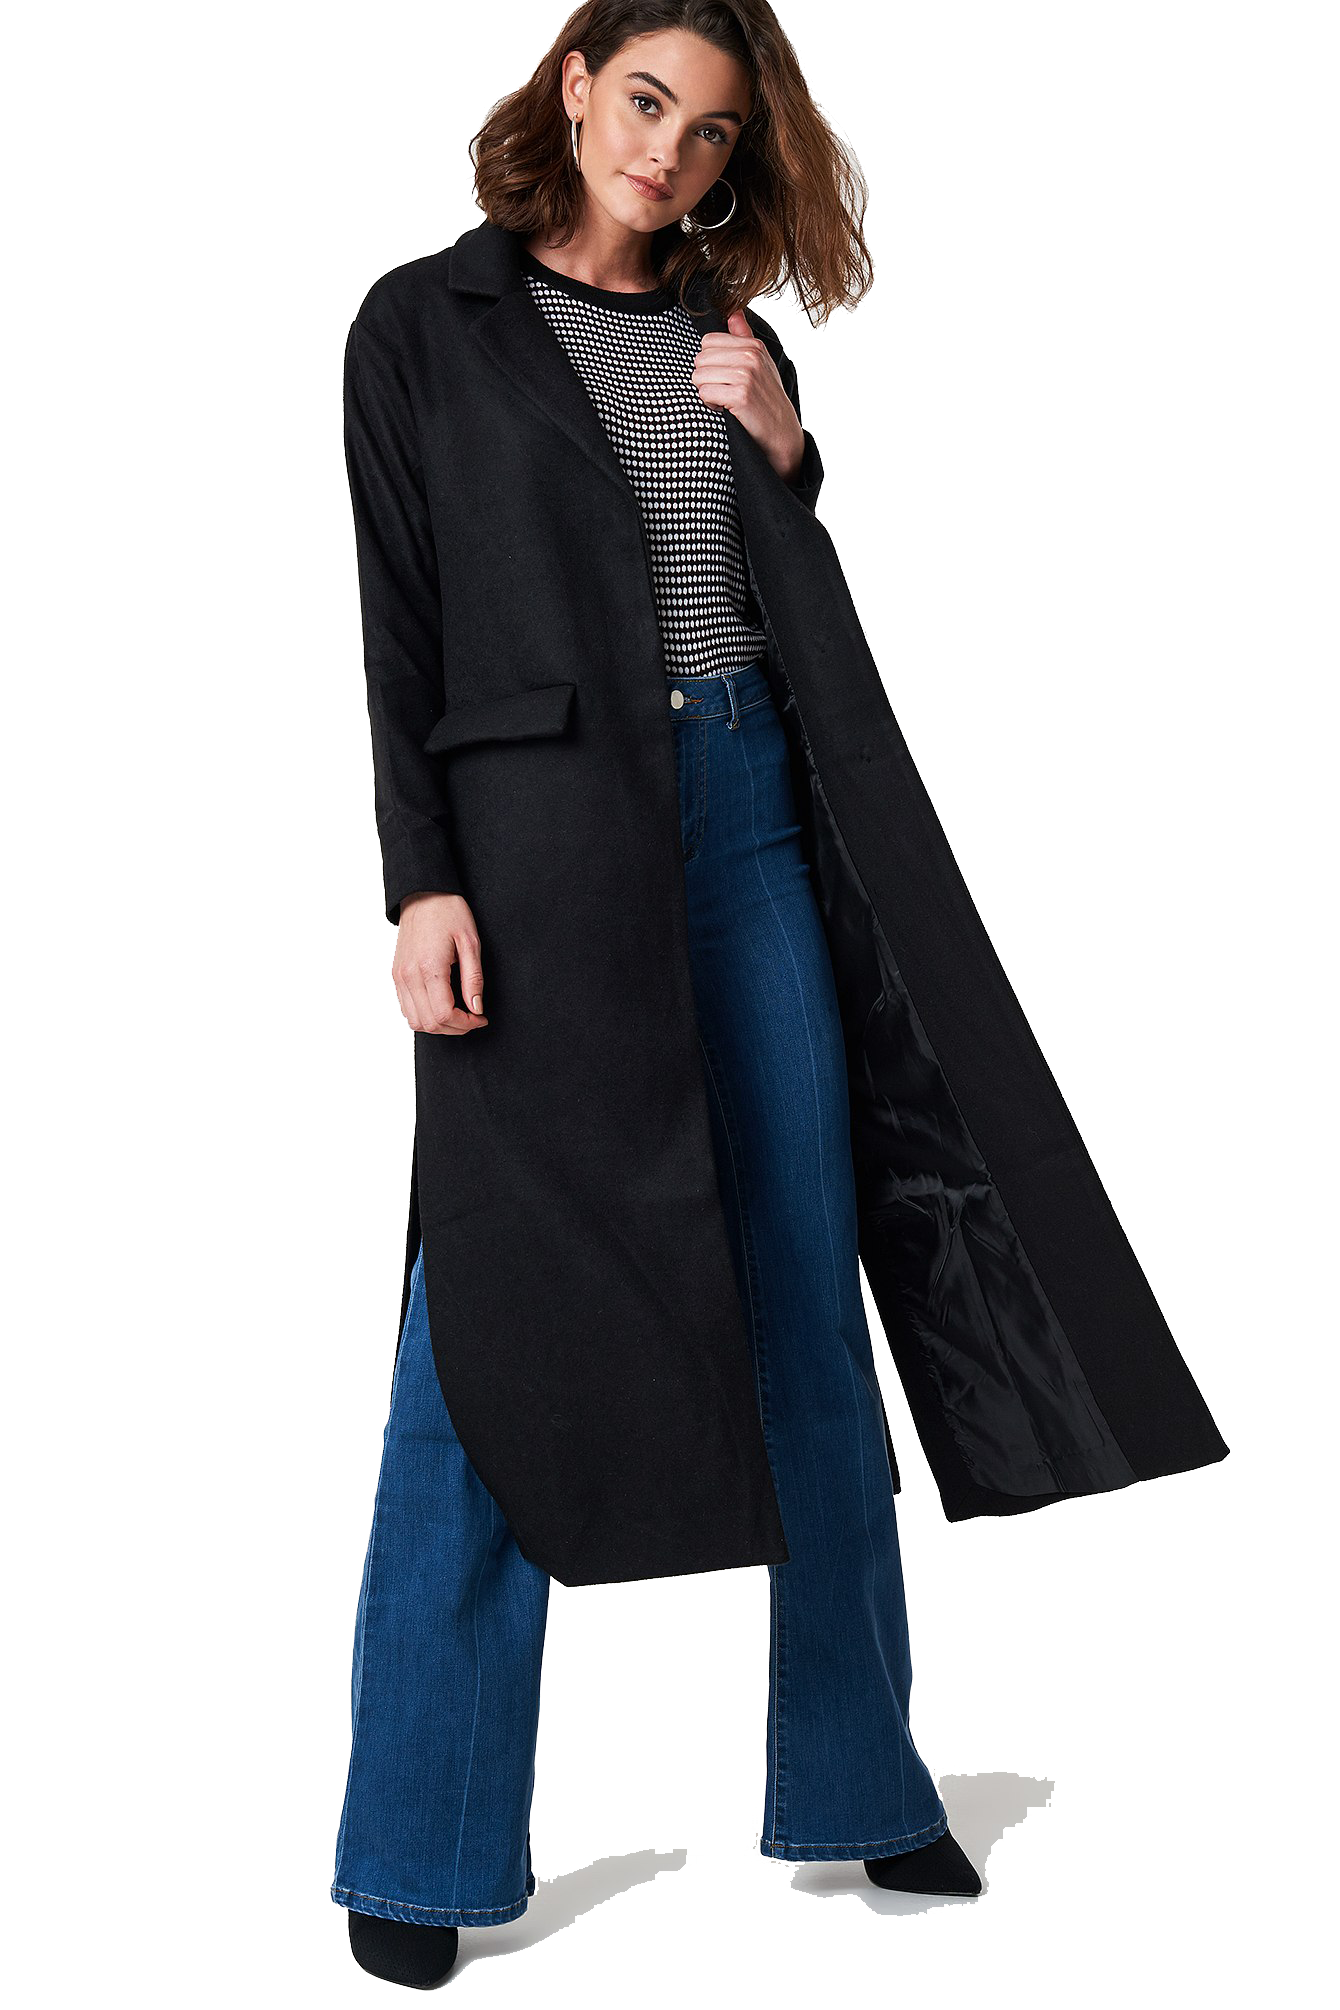 Immagine Trasparente per cappotto lungo donna